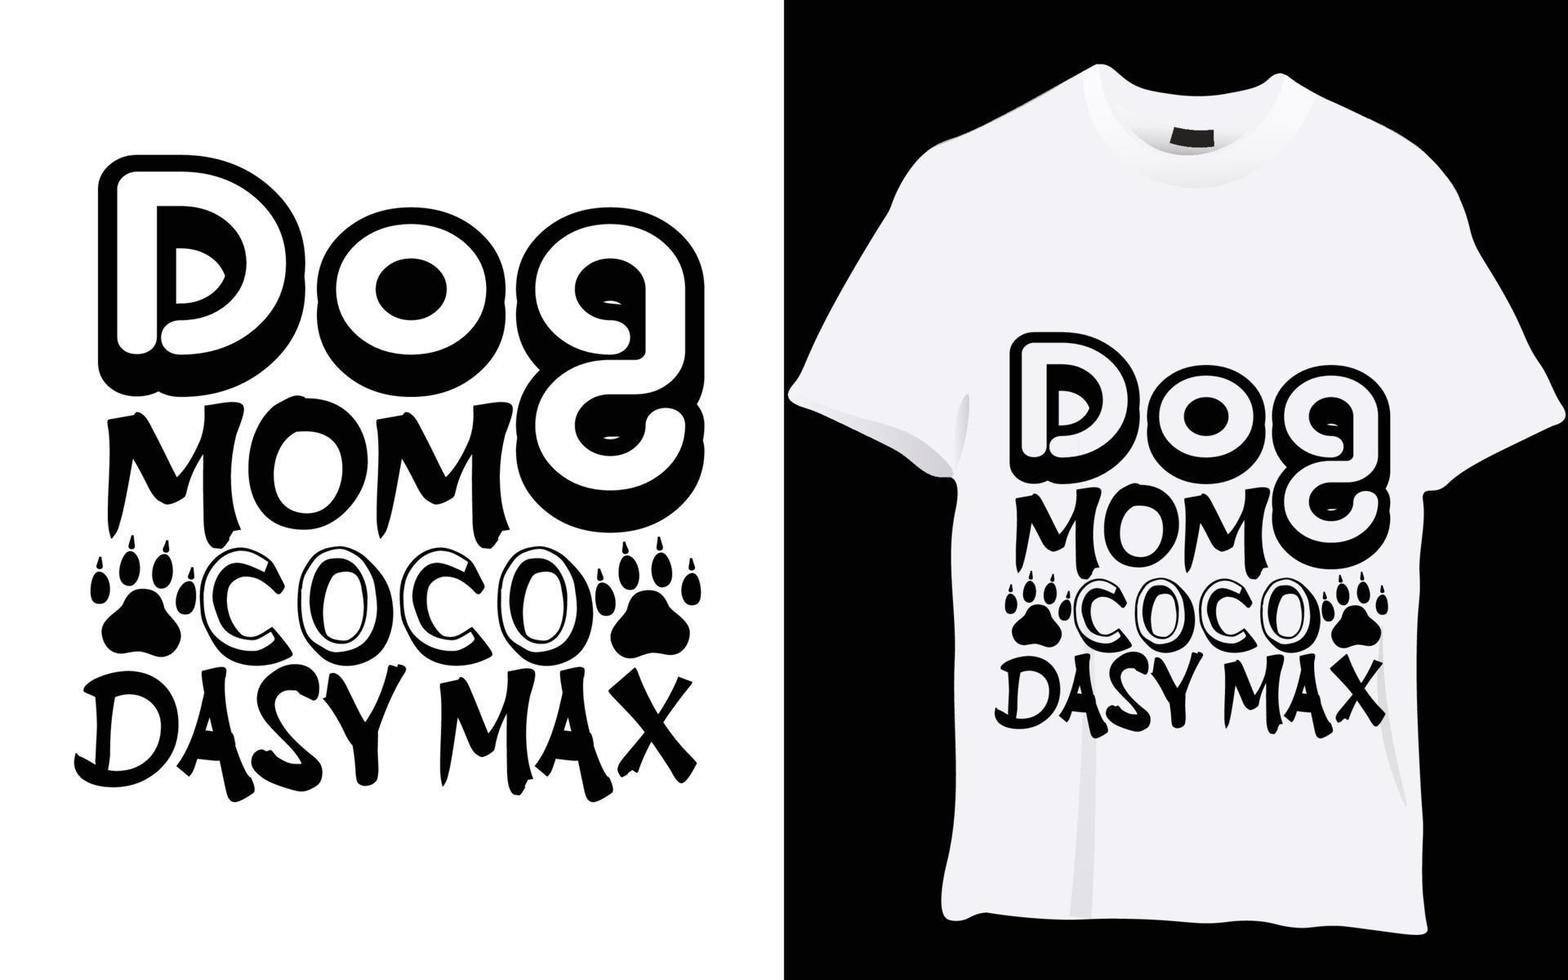 diseño de camiseta de perro vector